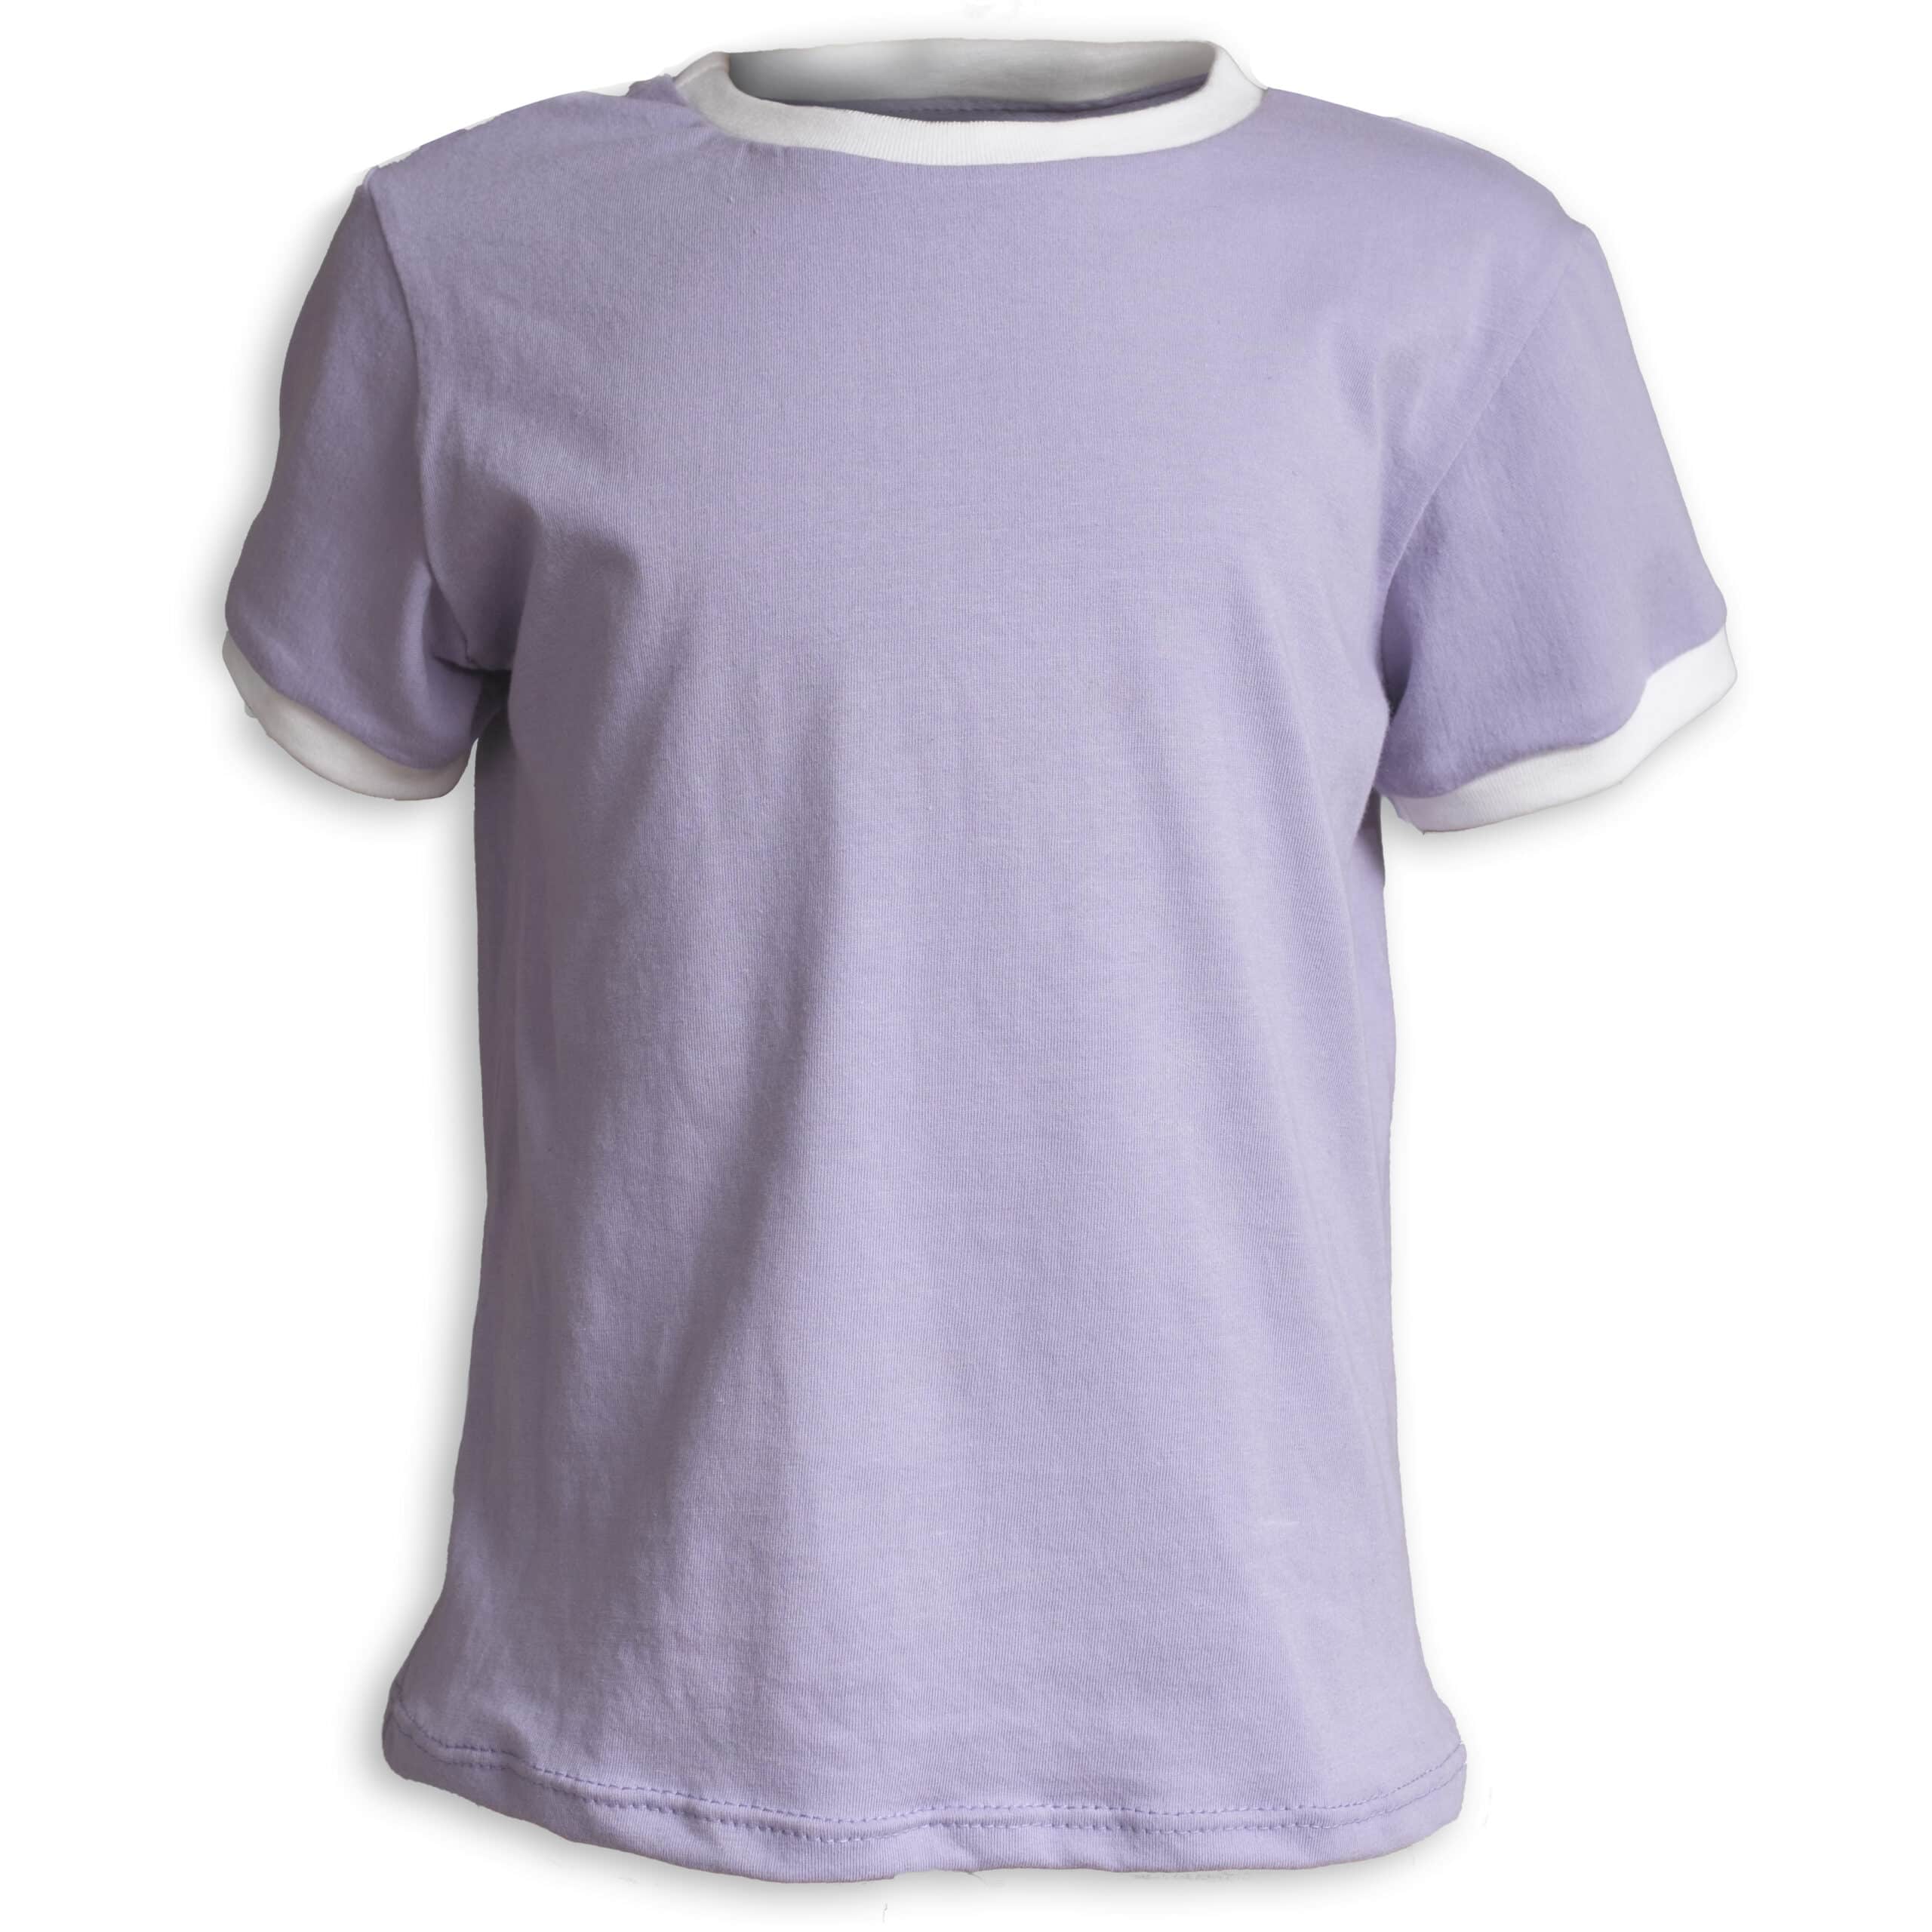 lilac t-shirt